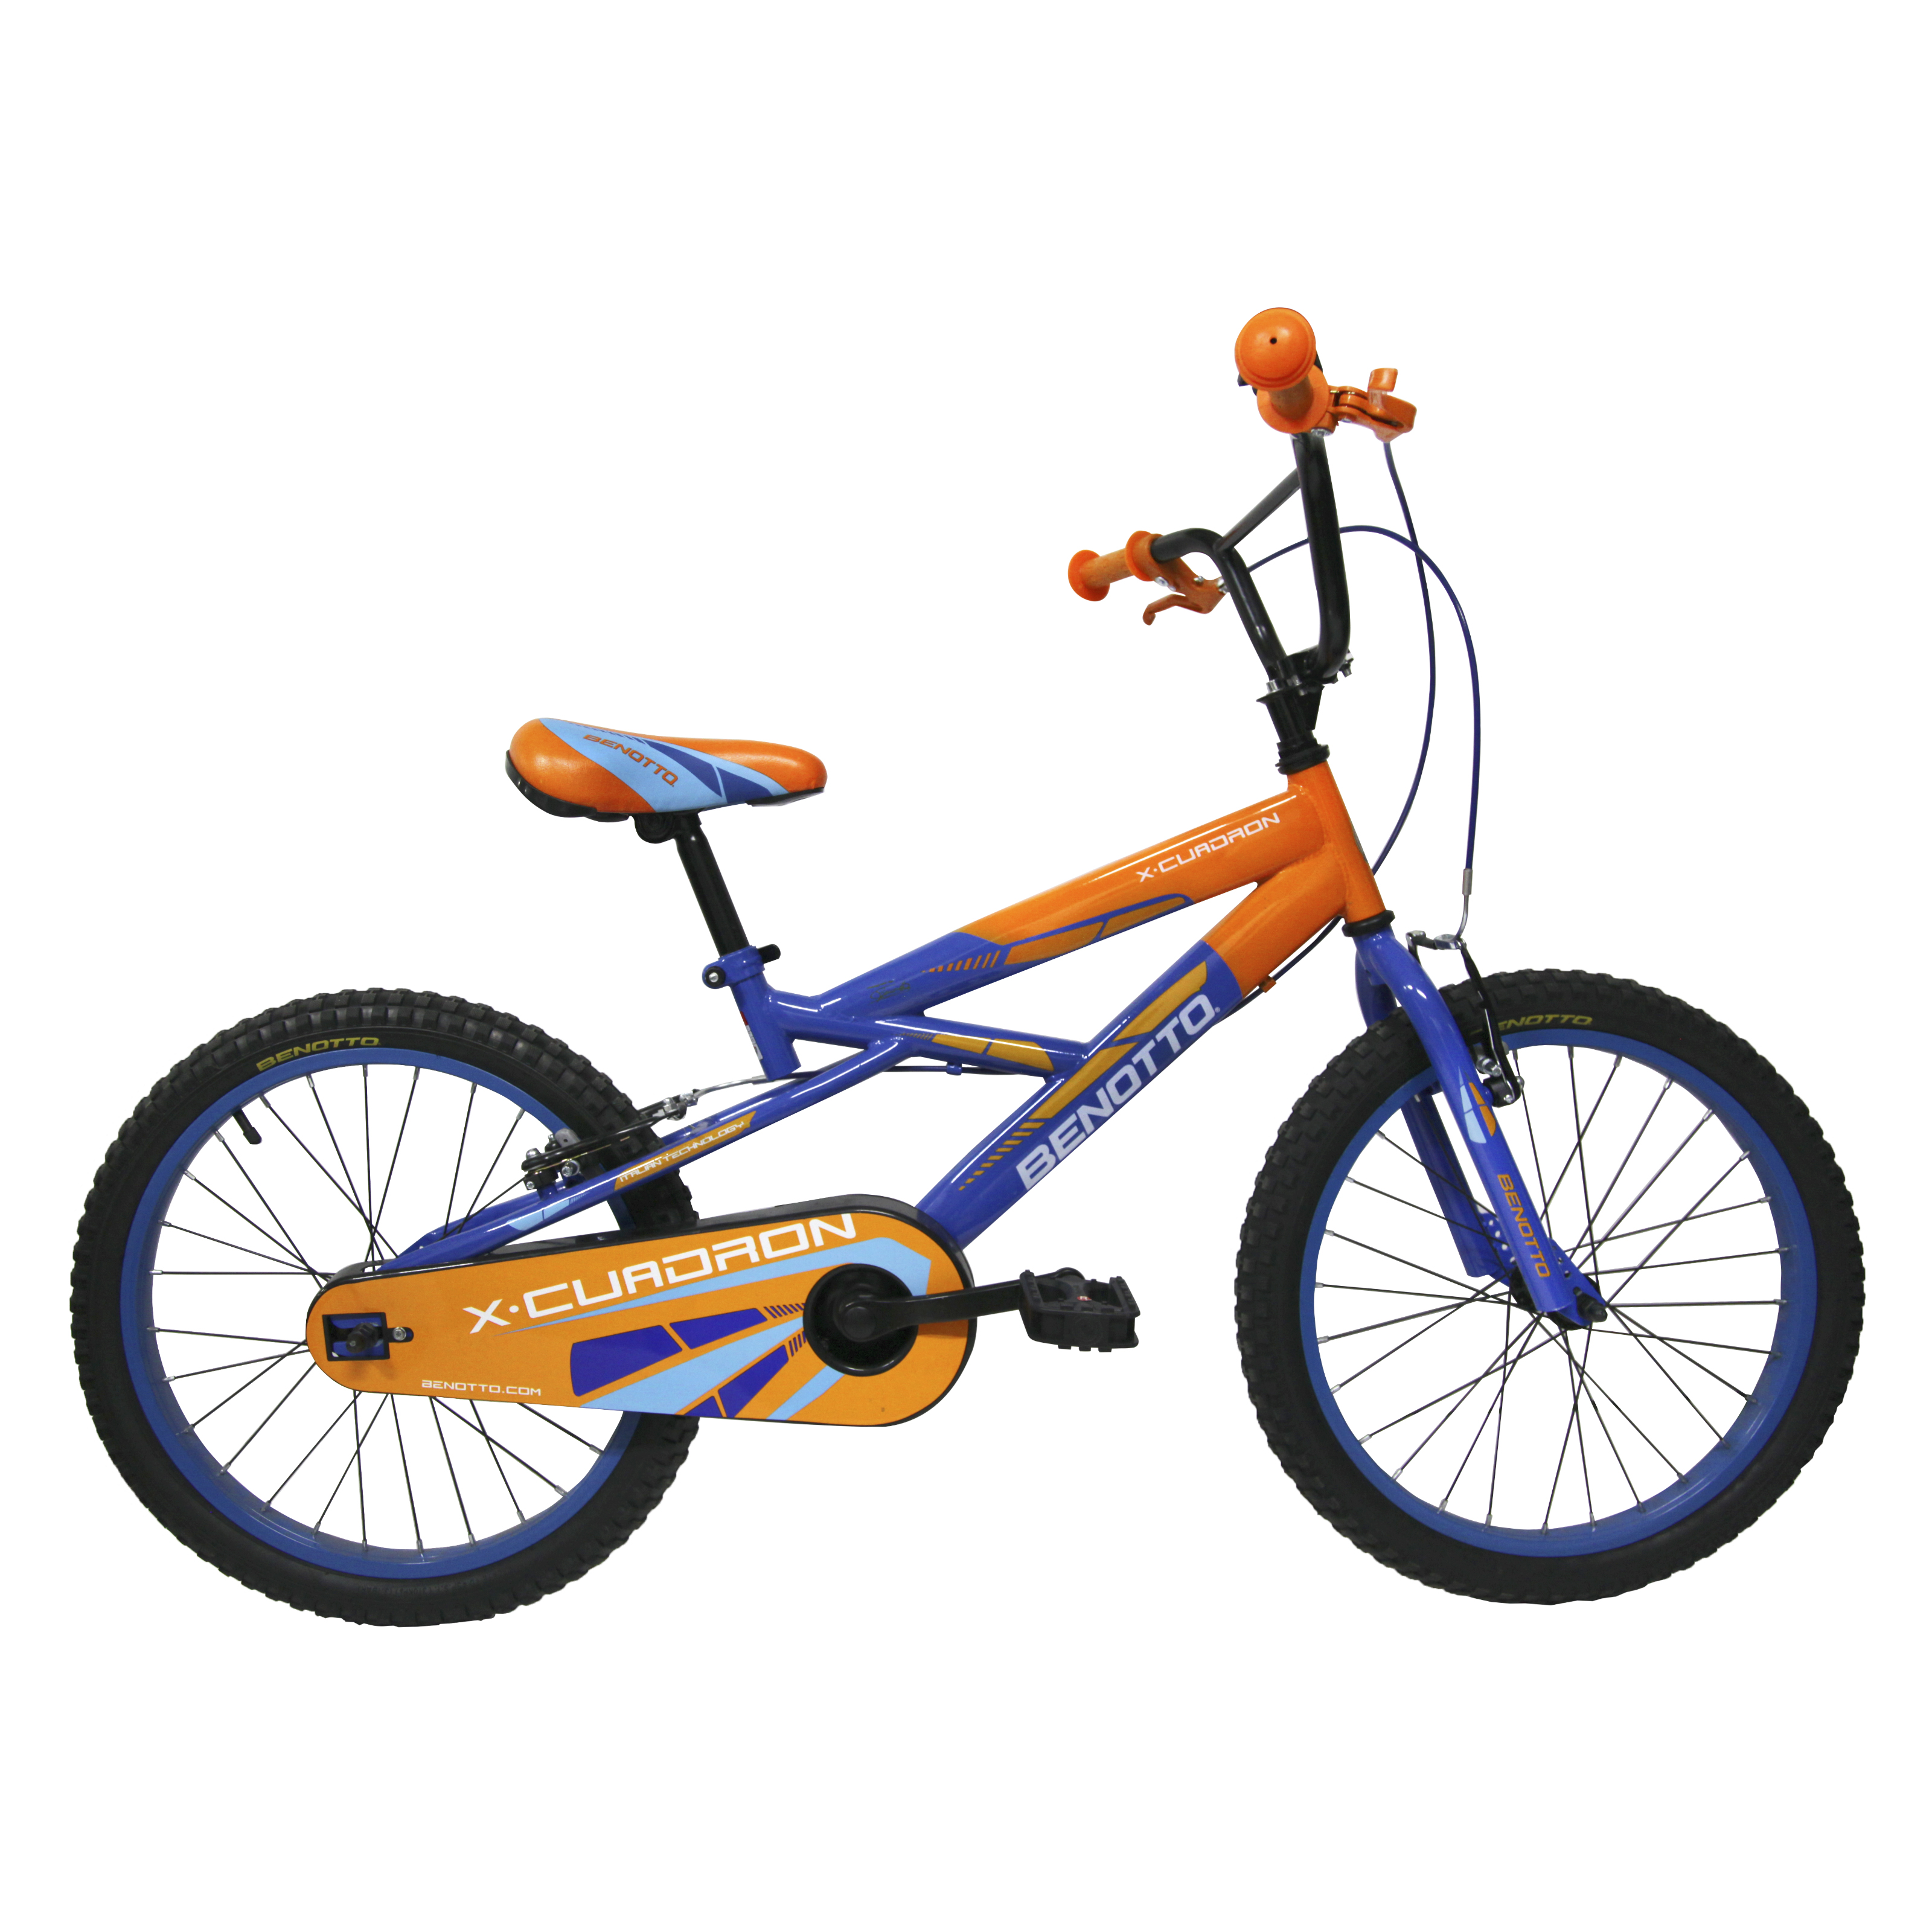 Bicicleta BENOTTO Cross XCUADRON R20 1V. Niño Frenos ”V” Acero Naranja/Azul Obscuro Talla:UN